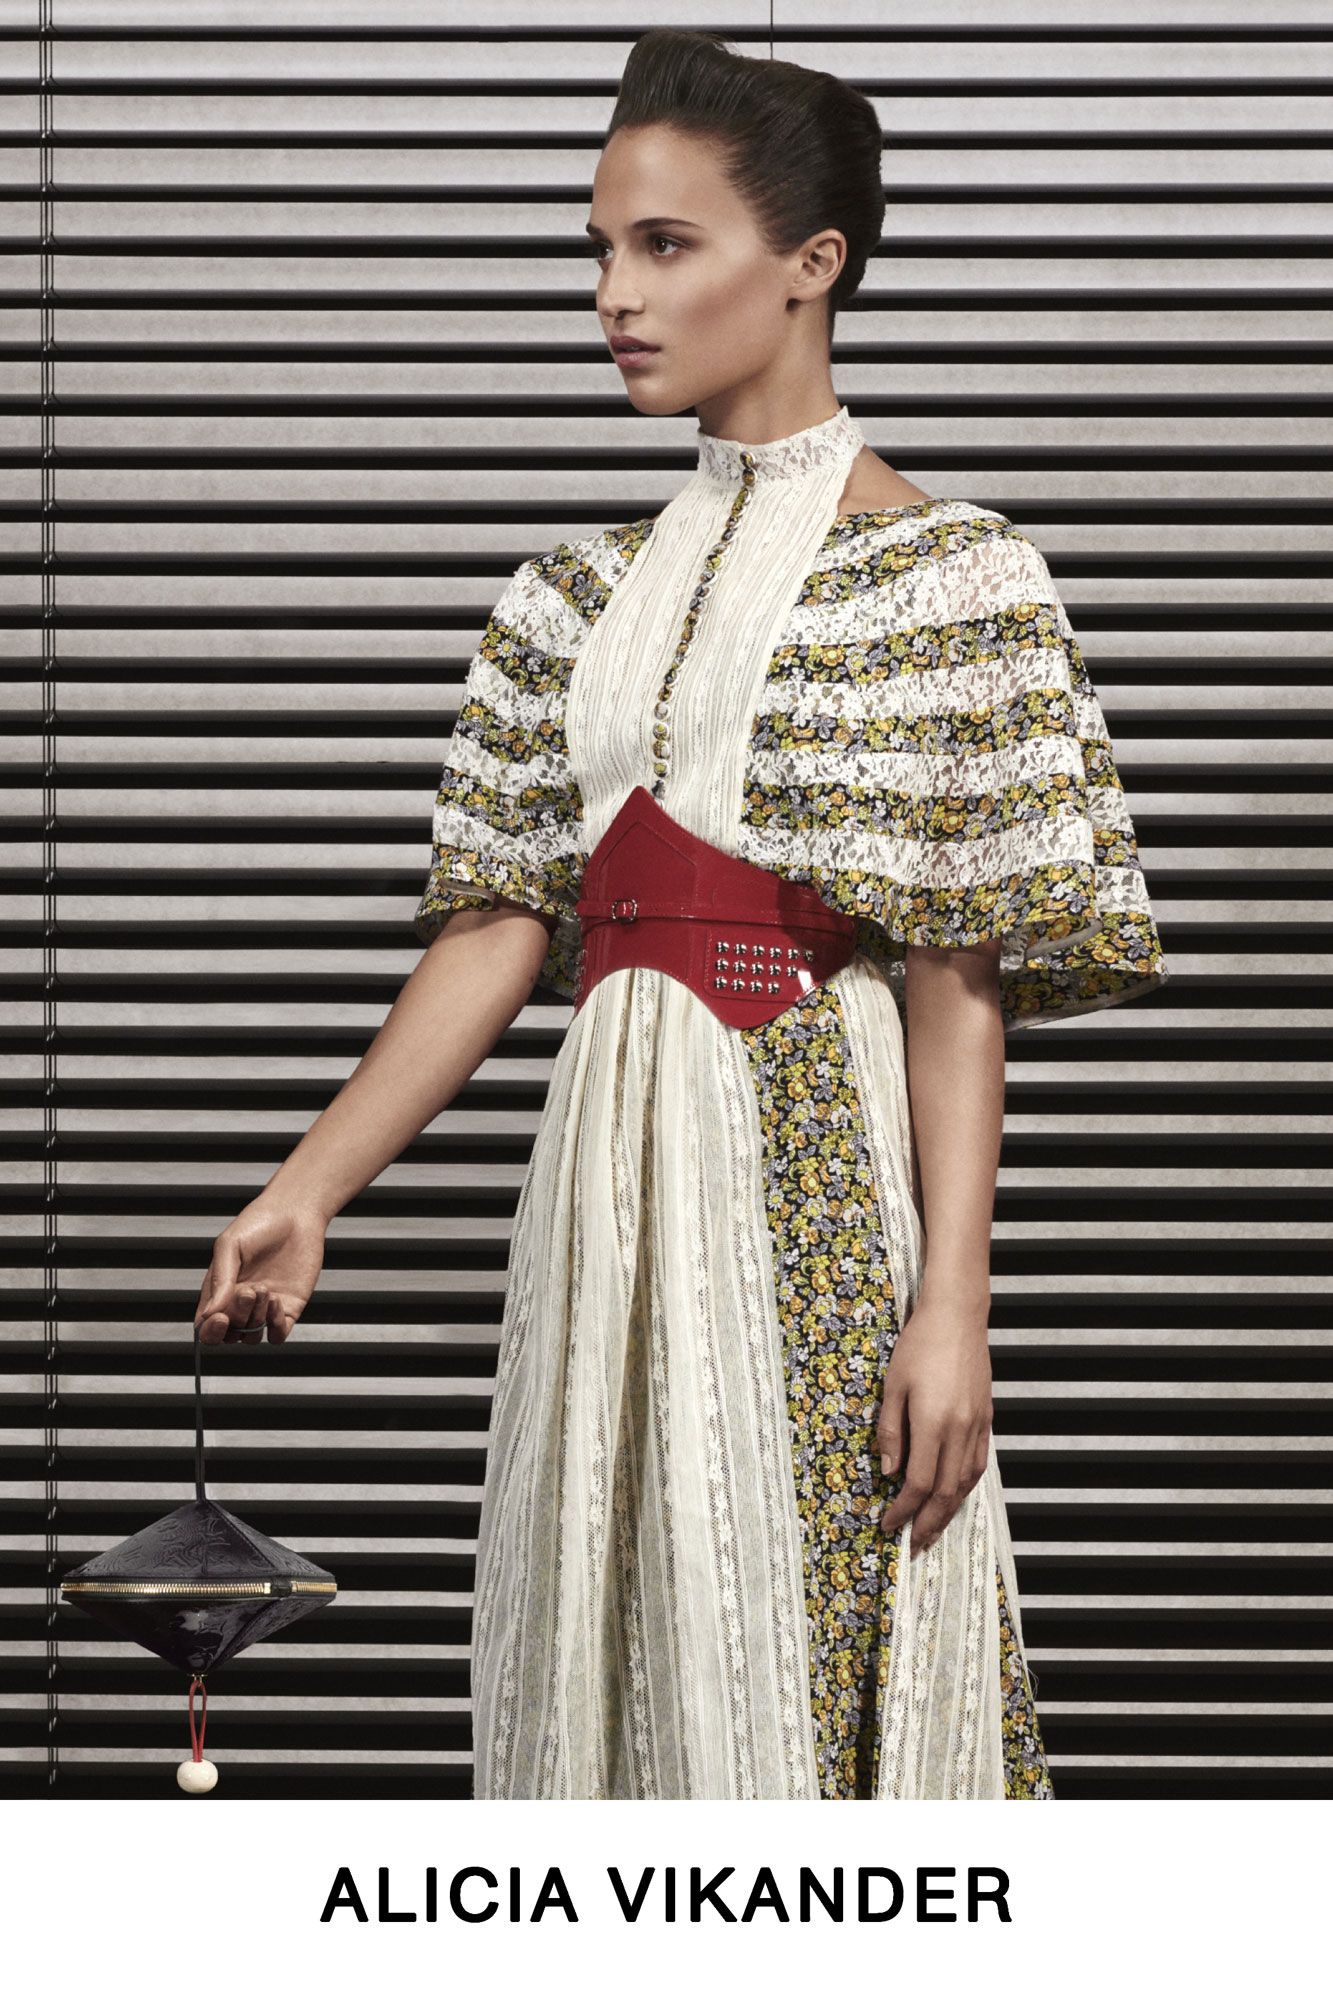 Samara Weaving Louis Vuitton Pre-Fall 2022 Campaign May 2022